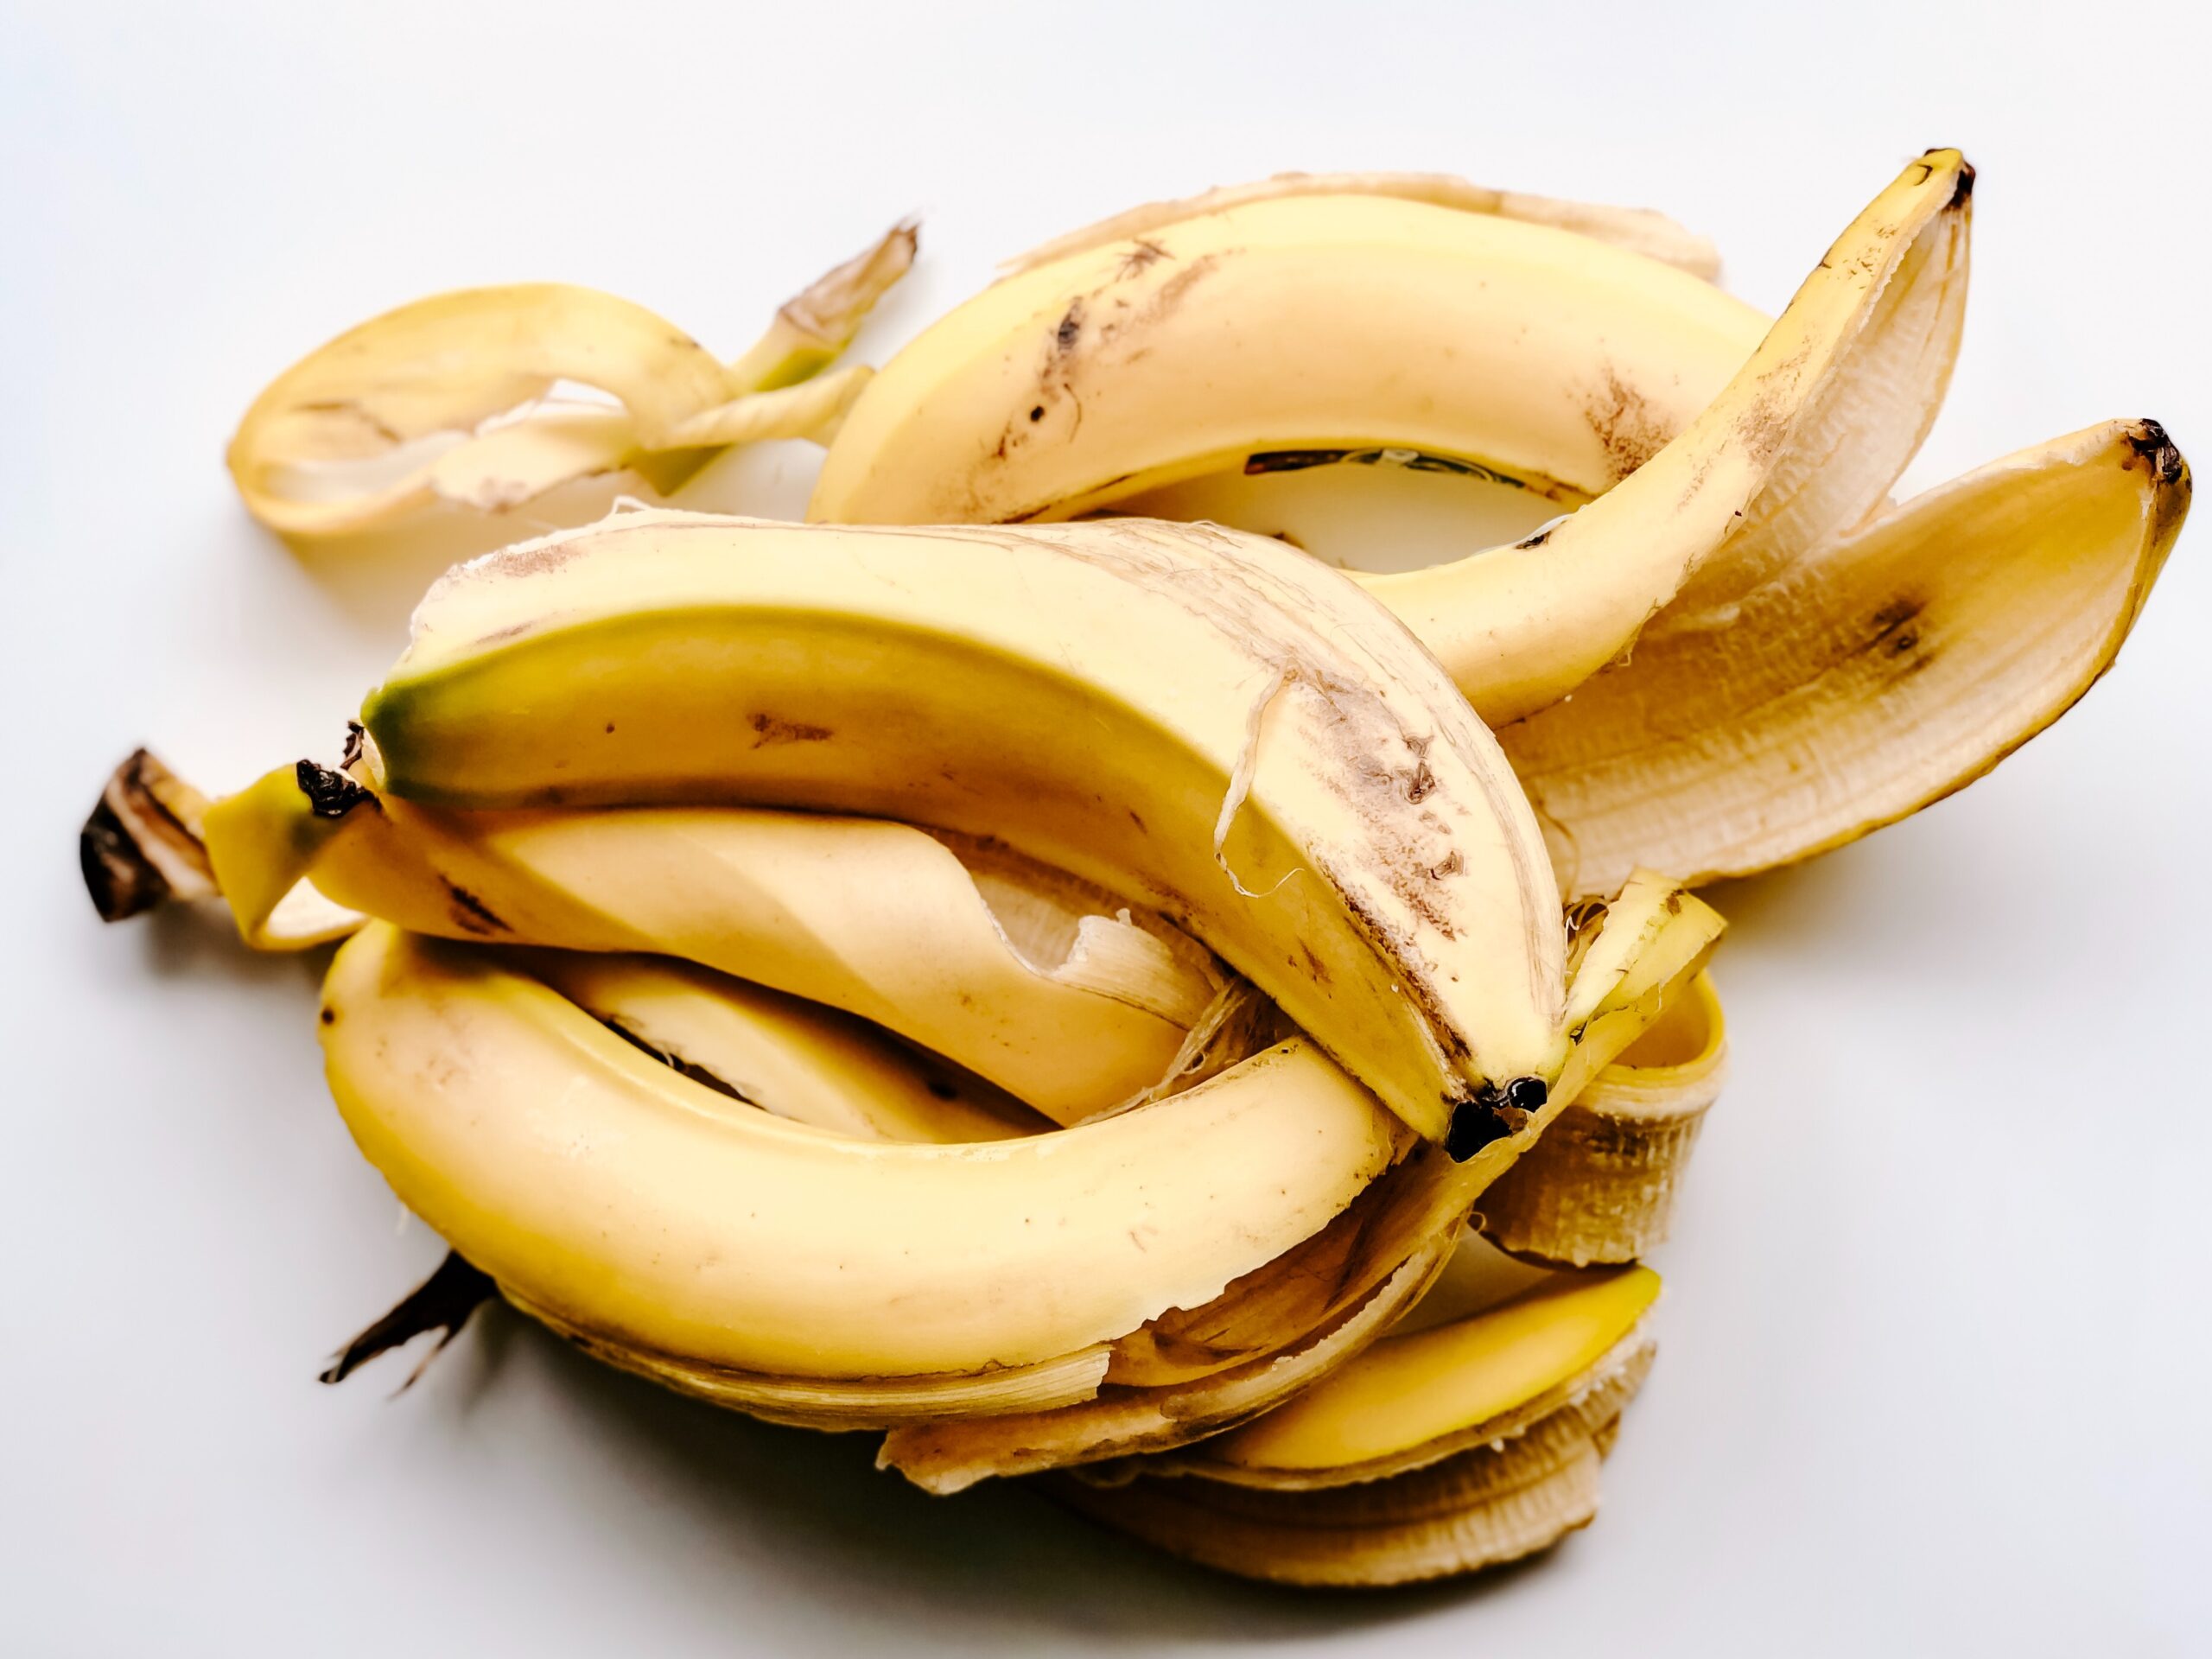 SJAJAN TRIK Kora banane za peglanje bora (VIDEO)